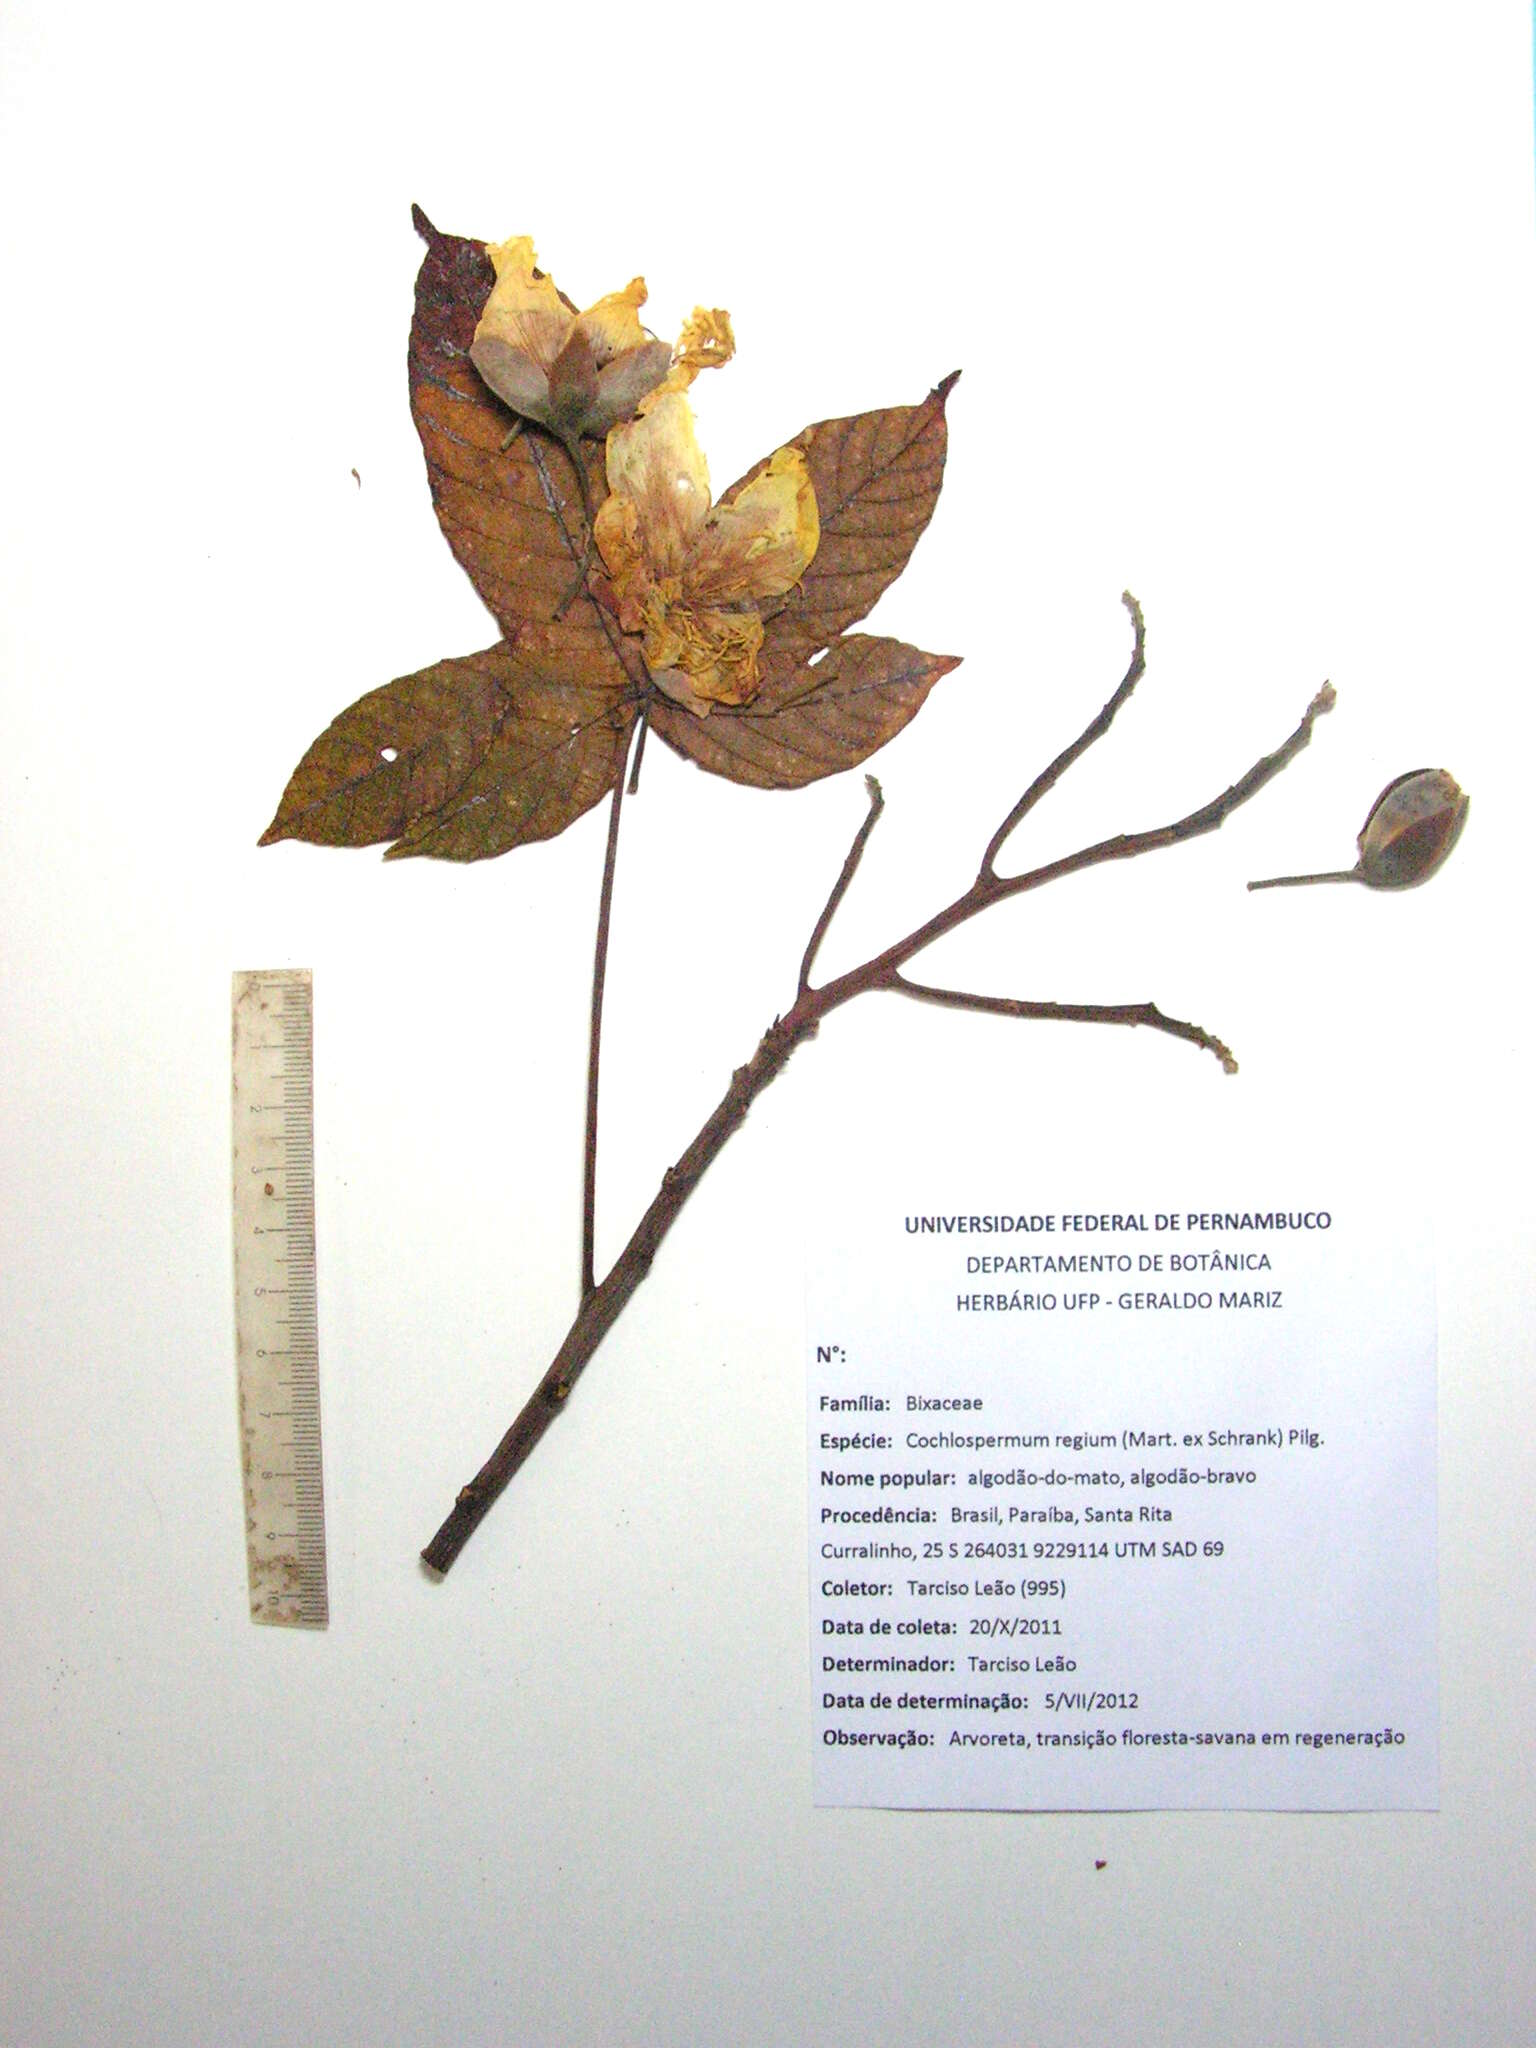 Image of cochlospermum